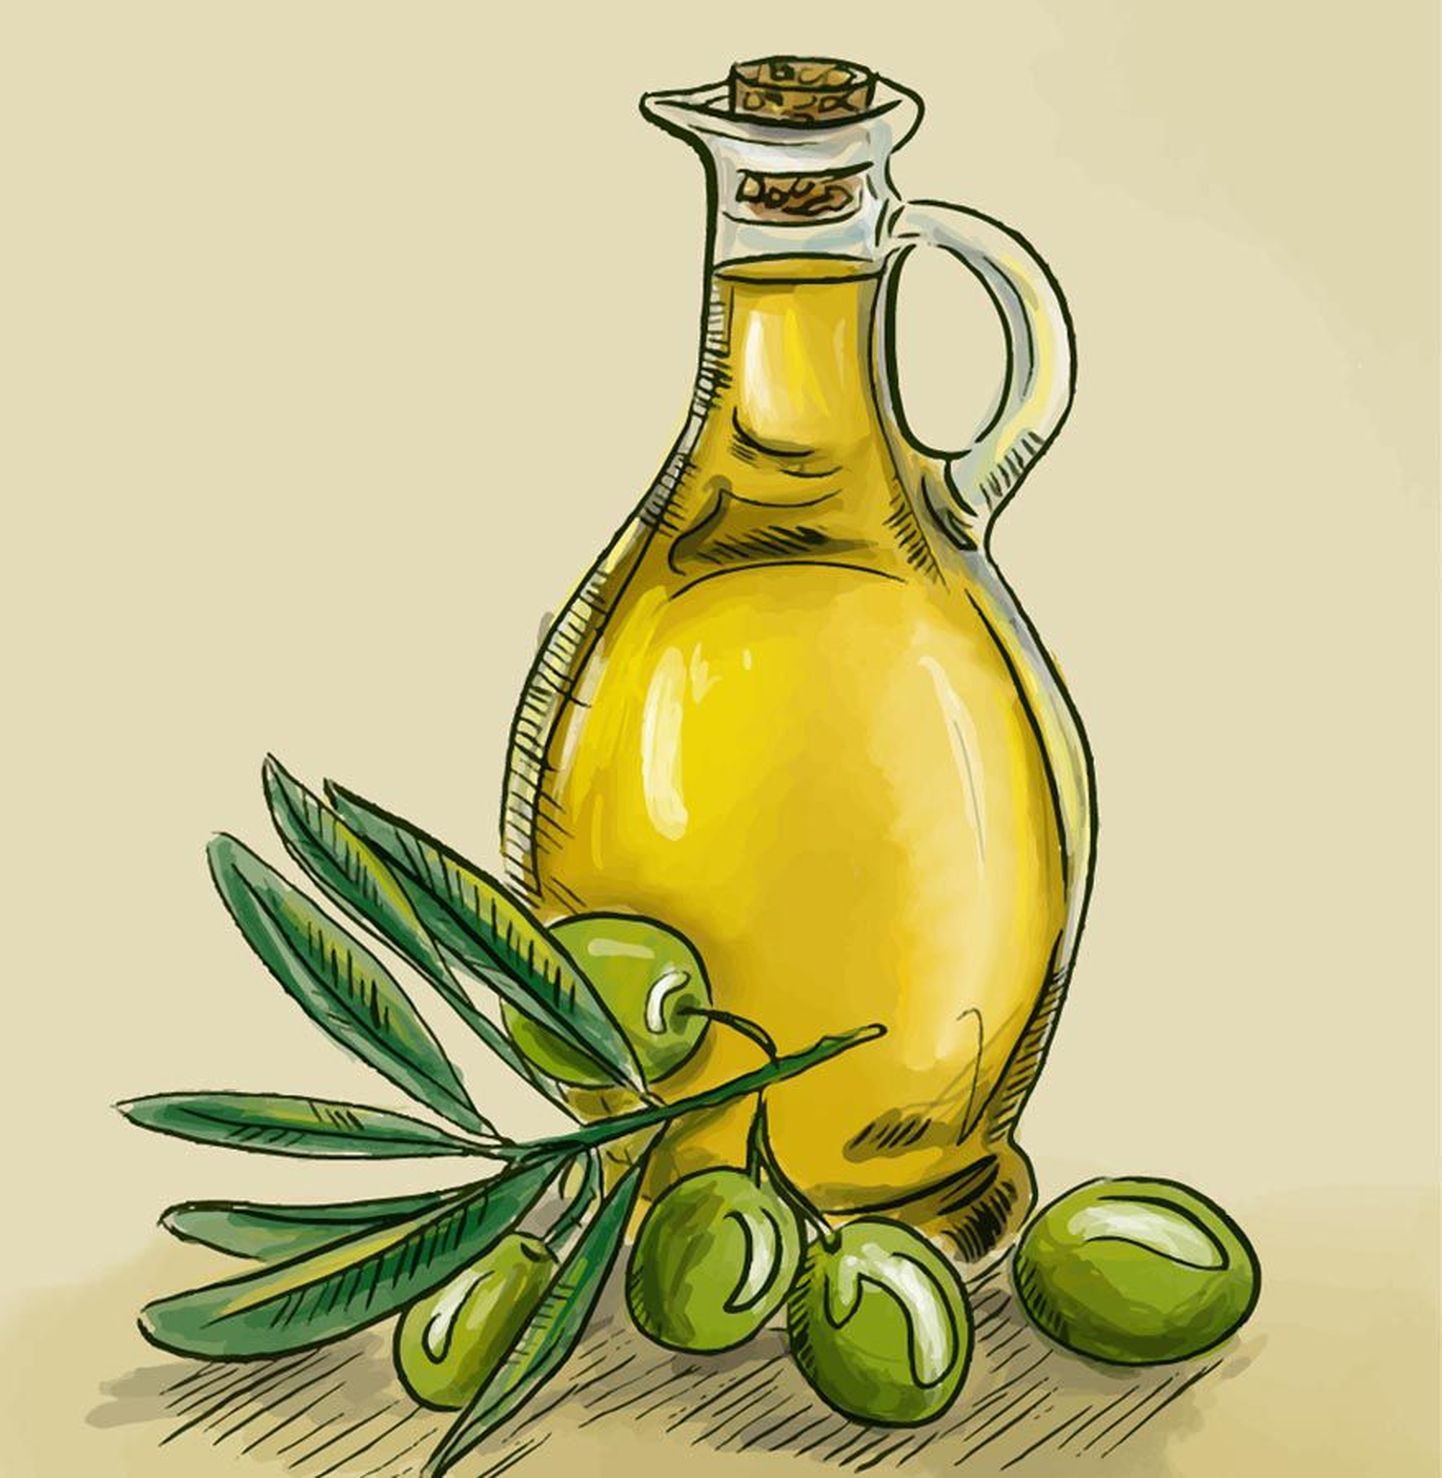 Kuigi rapsi-, päevalille- ja oliiviõli on koostiselt üsna sarnased, leiti hea mõju südamele eelkõige oliiviõlil.